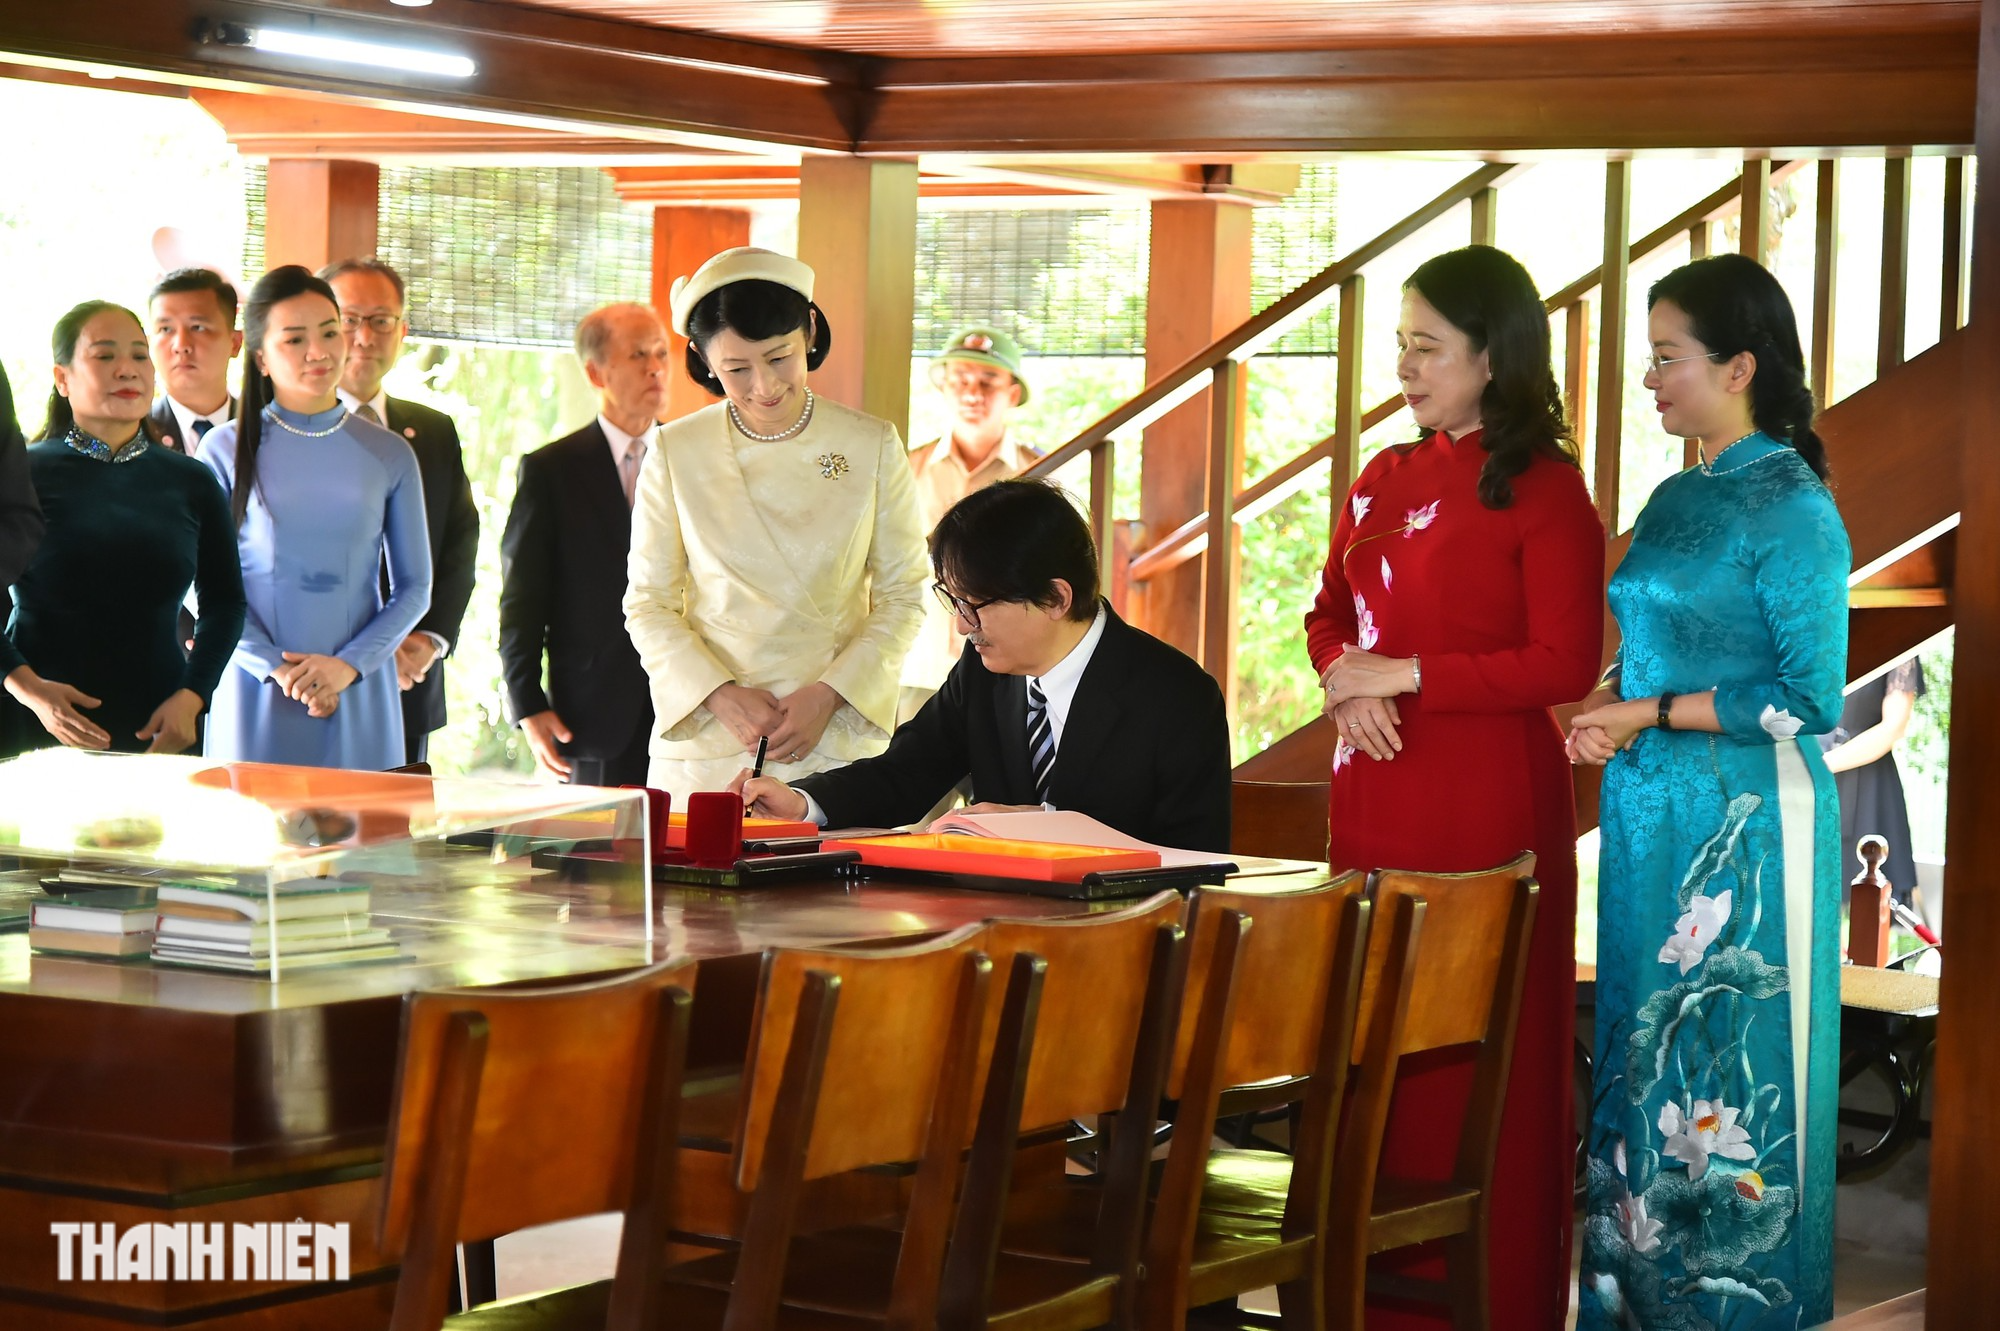 Hoàng Thái tử Nhật Bản Akishino thăm Khu di tích Chủ tịch Hồ Chí Minh - Ảnh 5.